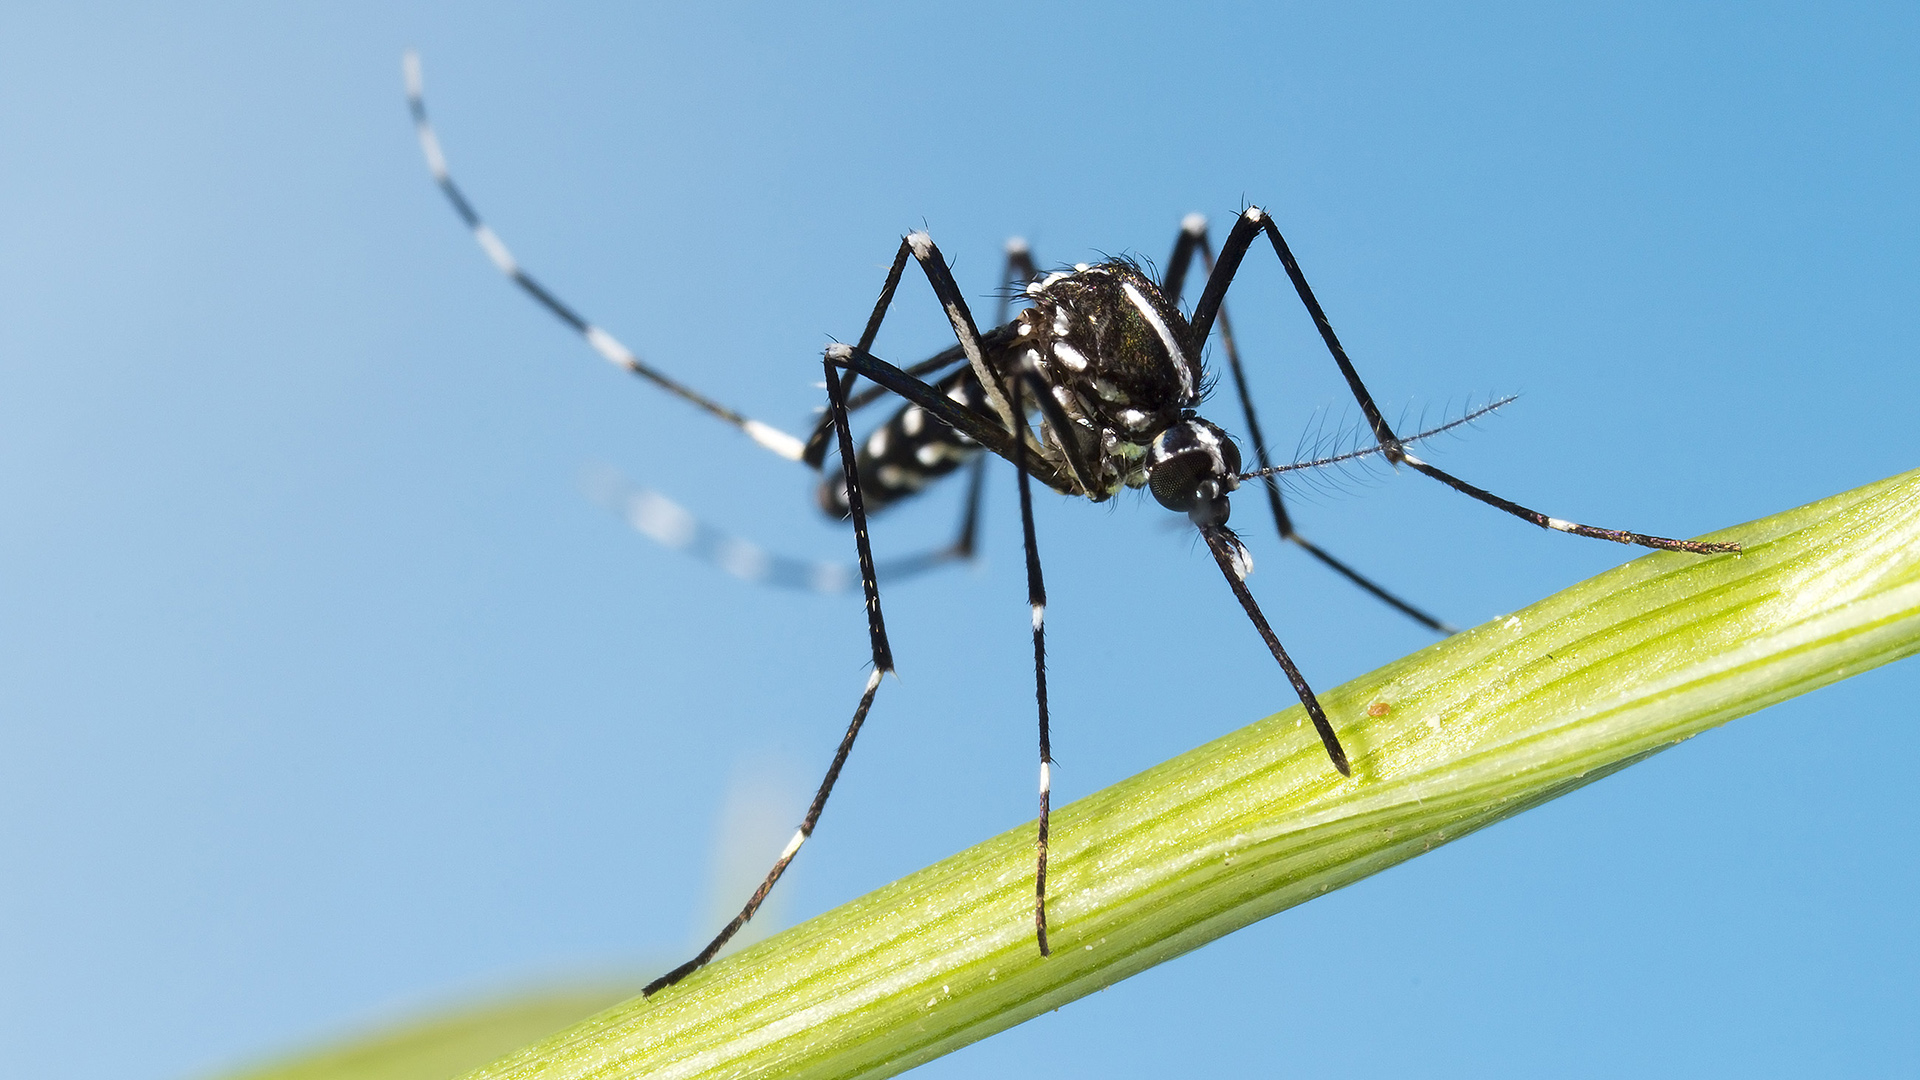 Tanto el Aedes aegypti como el Aedes albopictus pueden transmitir los virus del dengue, chikunguña y zika, así como al menos más de una decena de otras enfermedades emergentes (Shutterstock)